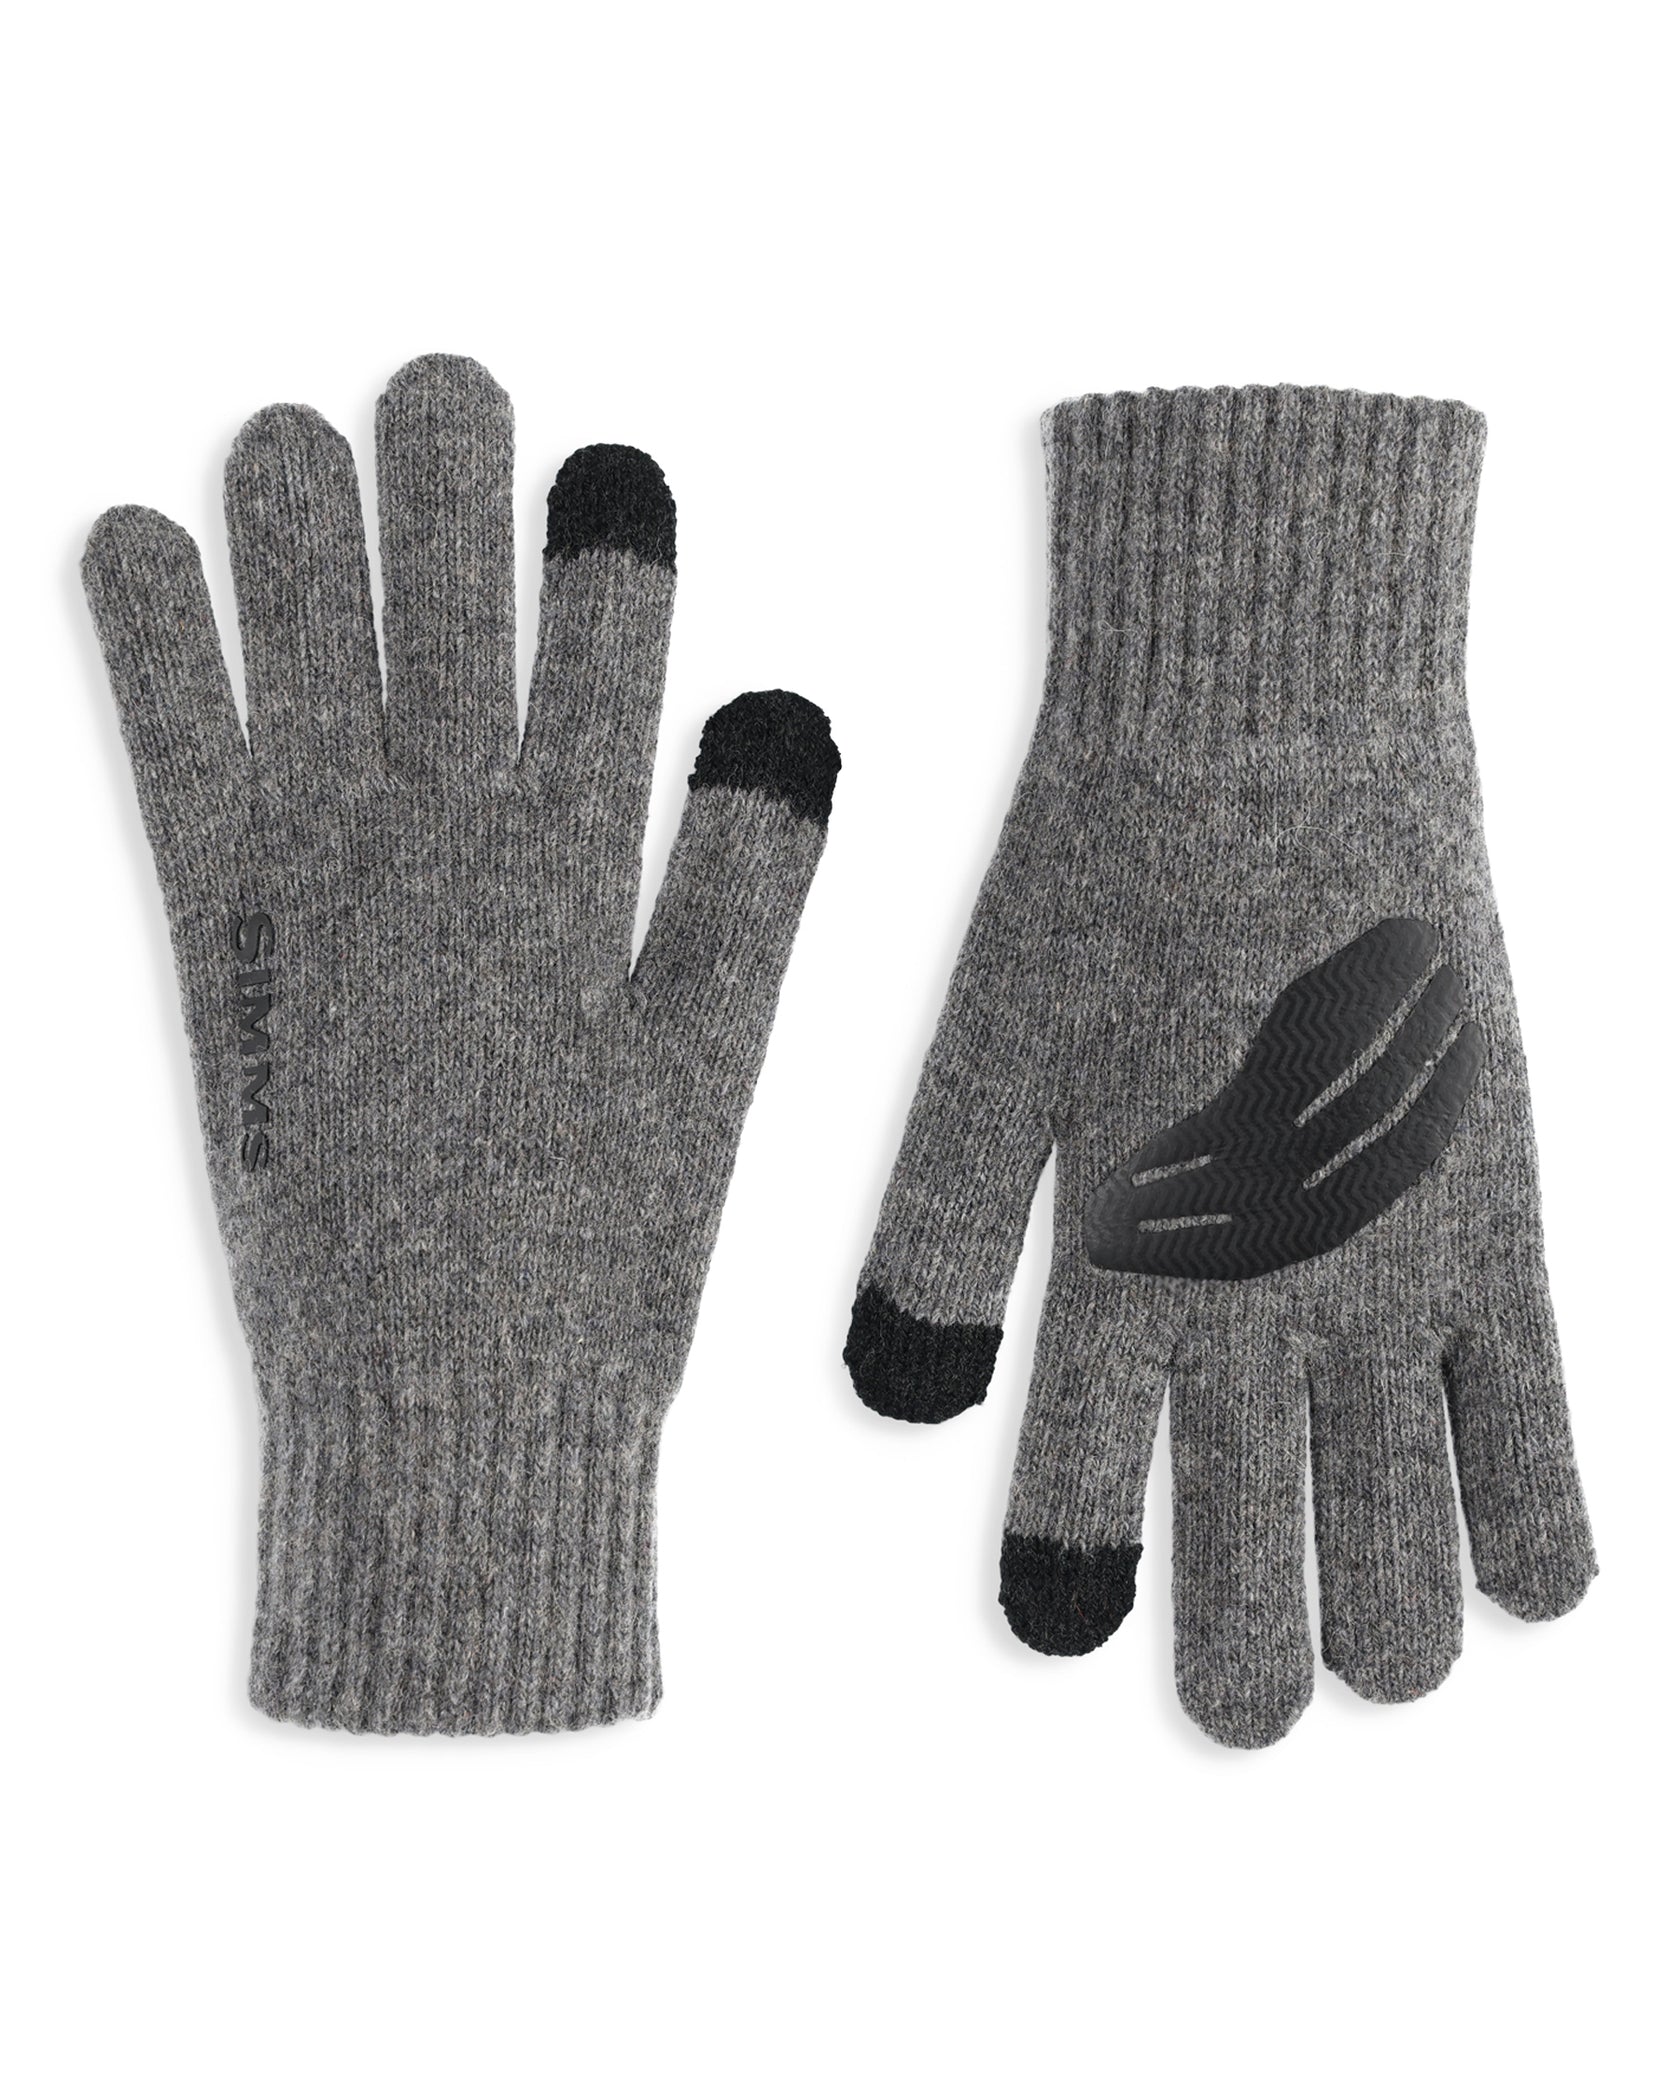 Simms Wool Full Finger Glove S/M